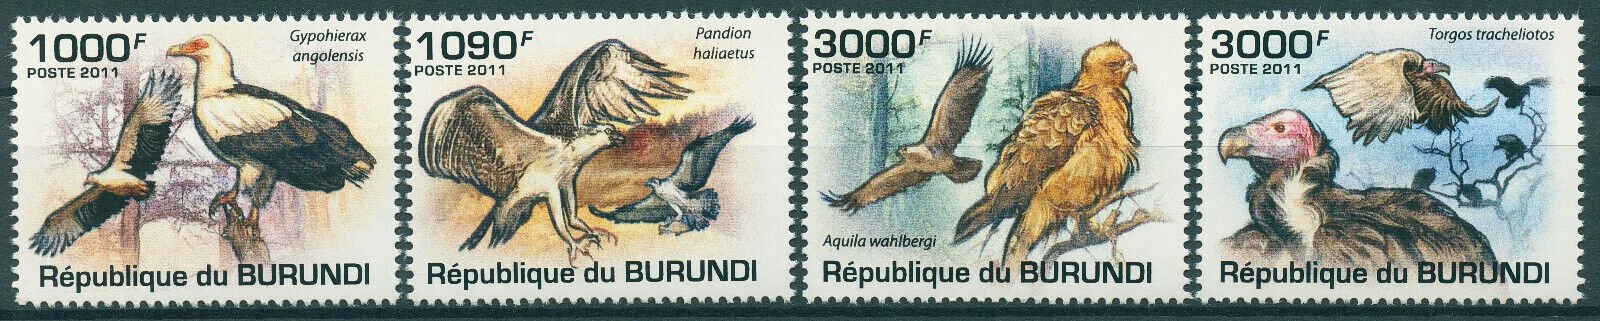 Burundi 2011 MNH Birds of Prey on Stamps Raptors Vultures Osprey Eagles 4v Set